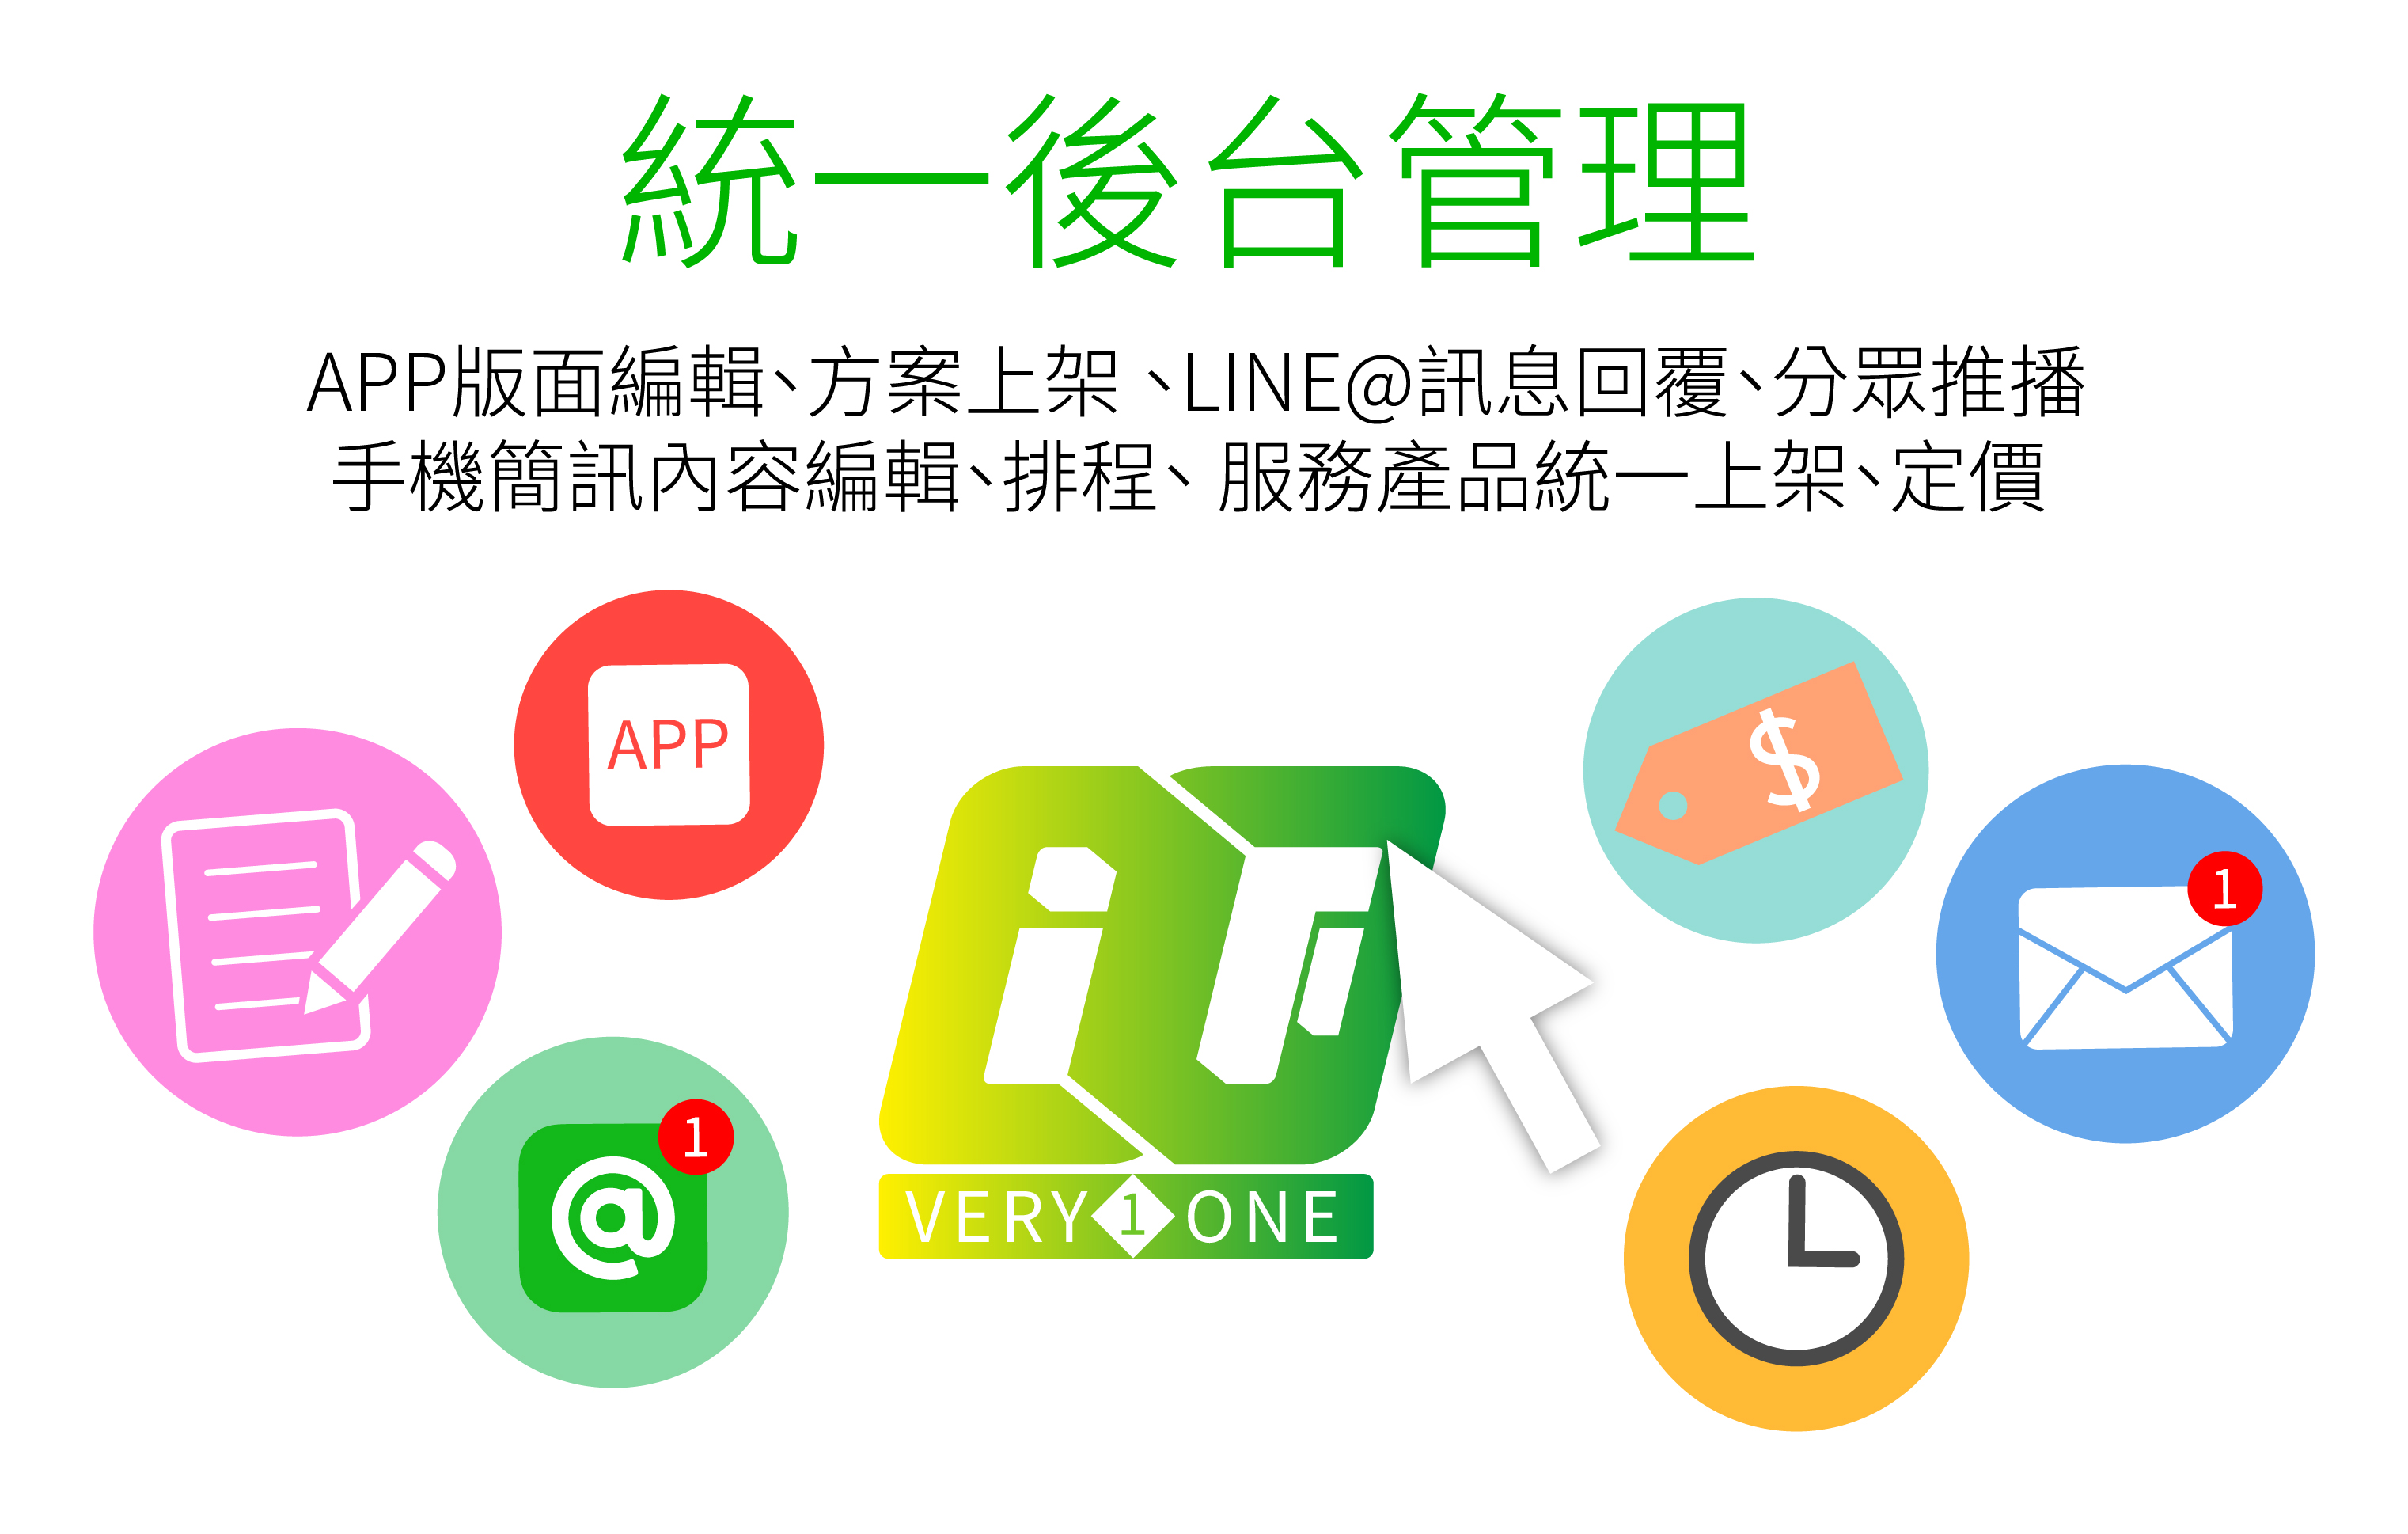 line@,line@管理,Line@系統,LINE行銷,LINE行銷經營,LINE官方帳號 行銷,LINE官方帳號 經營,LINE社群 經營,LINE行銷 案例,LINE社群 行銷,LINE行銷 工具